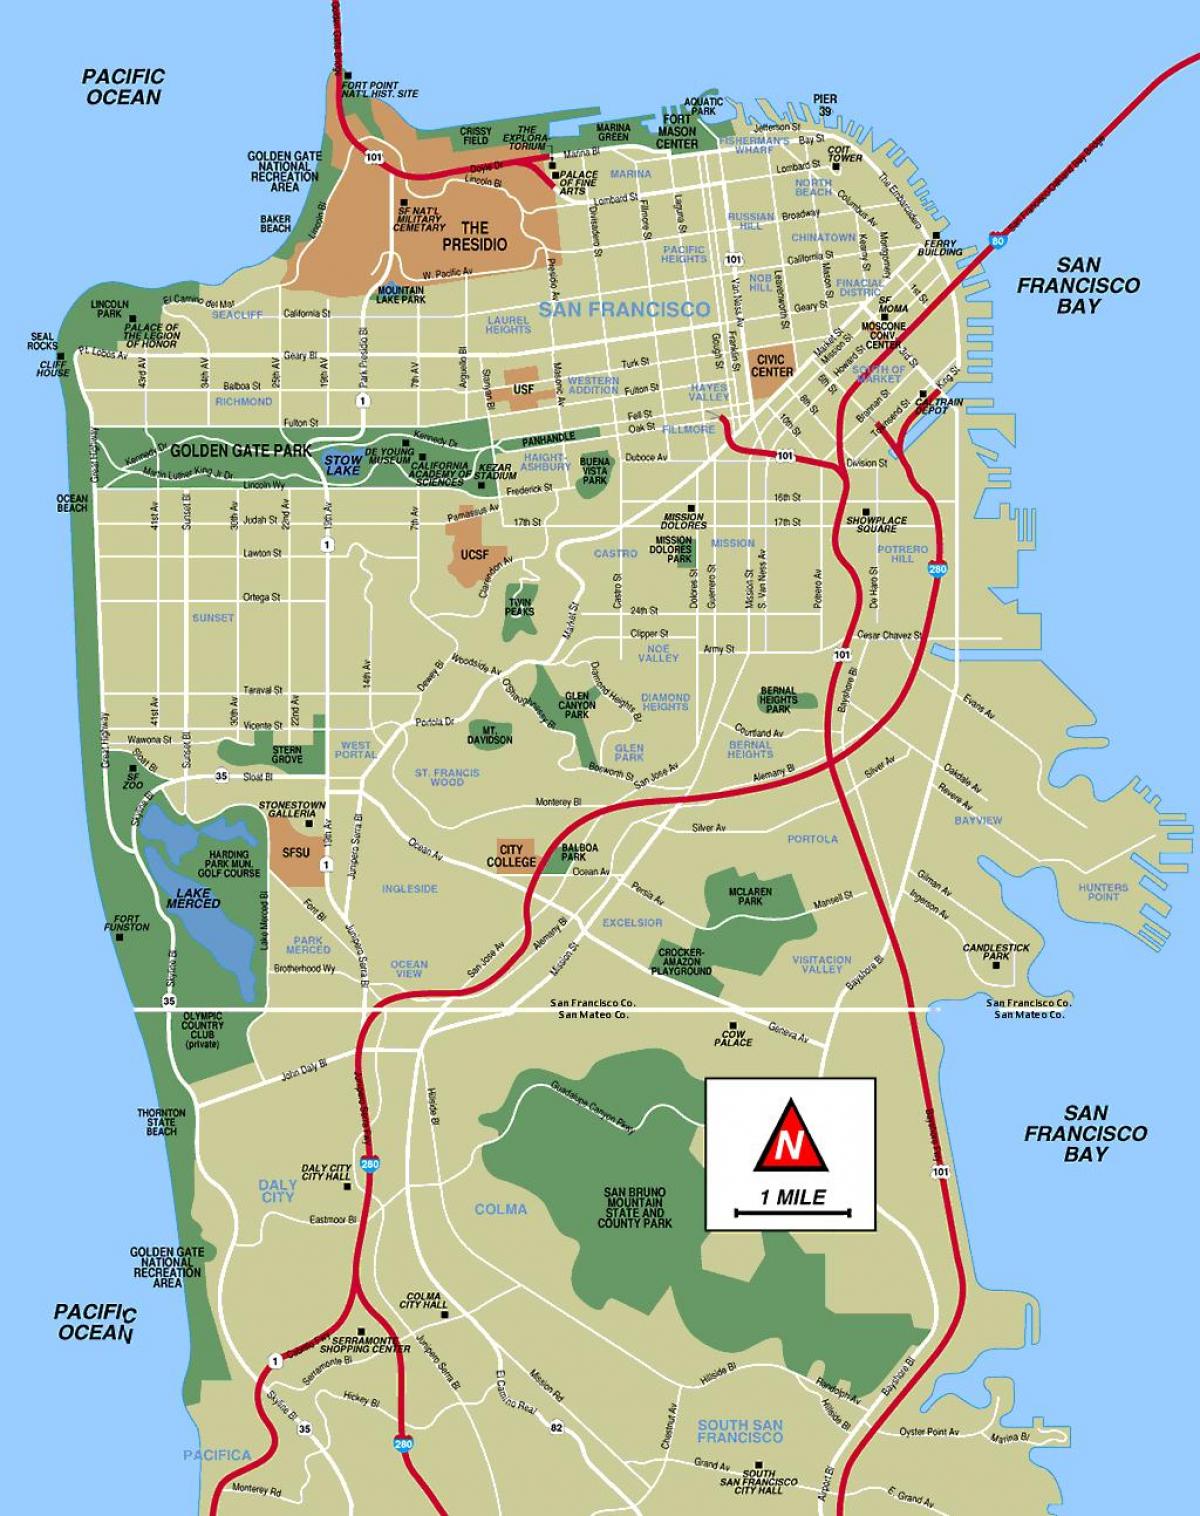 San Francisco haritası ziyaret yerleri 